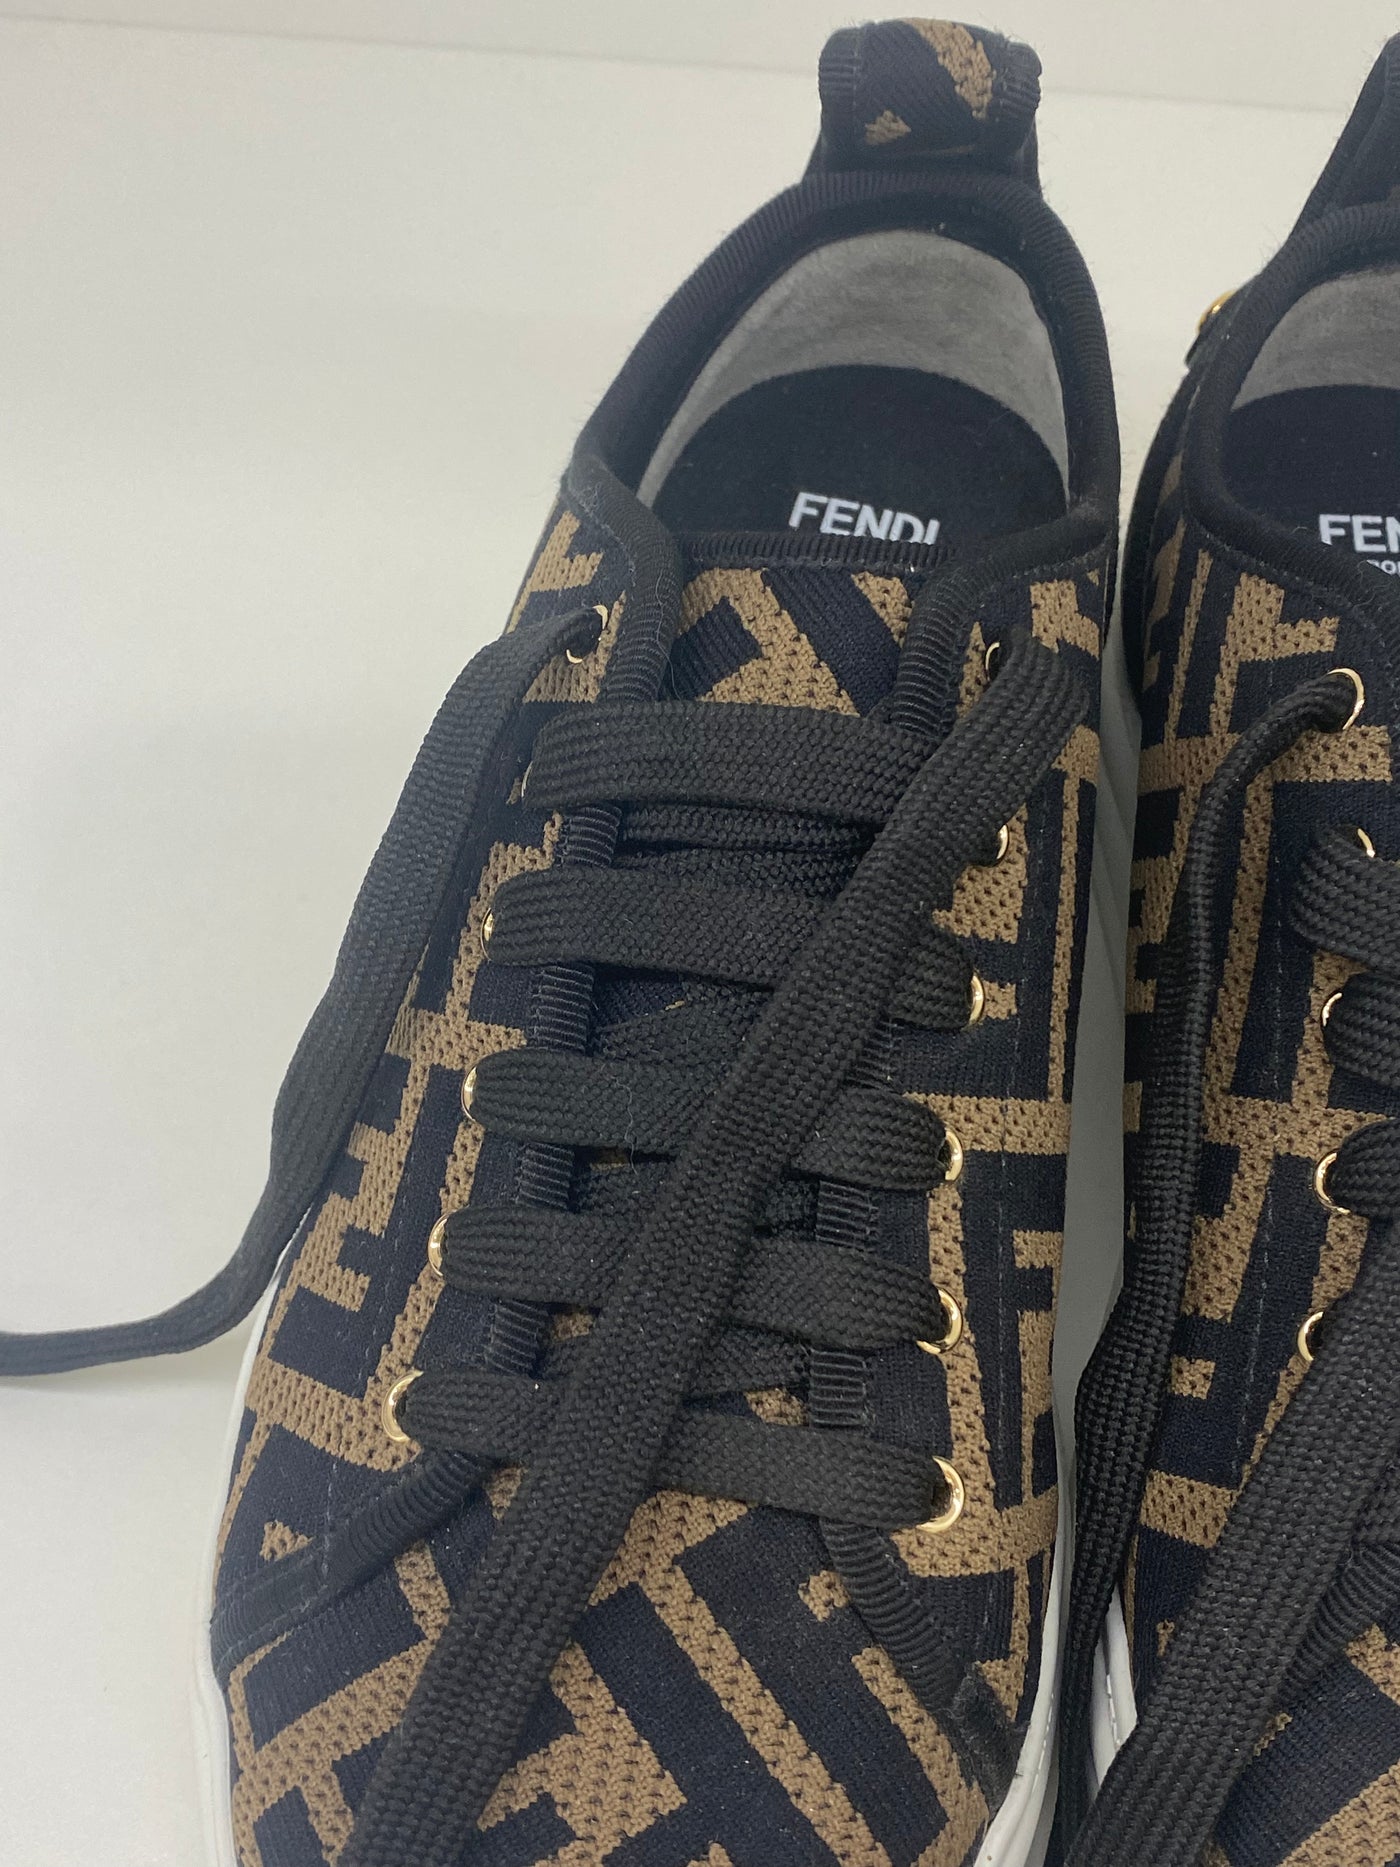 Fendi FF logo sneakers size 37